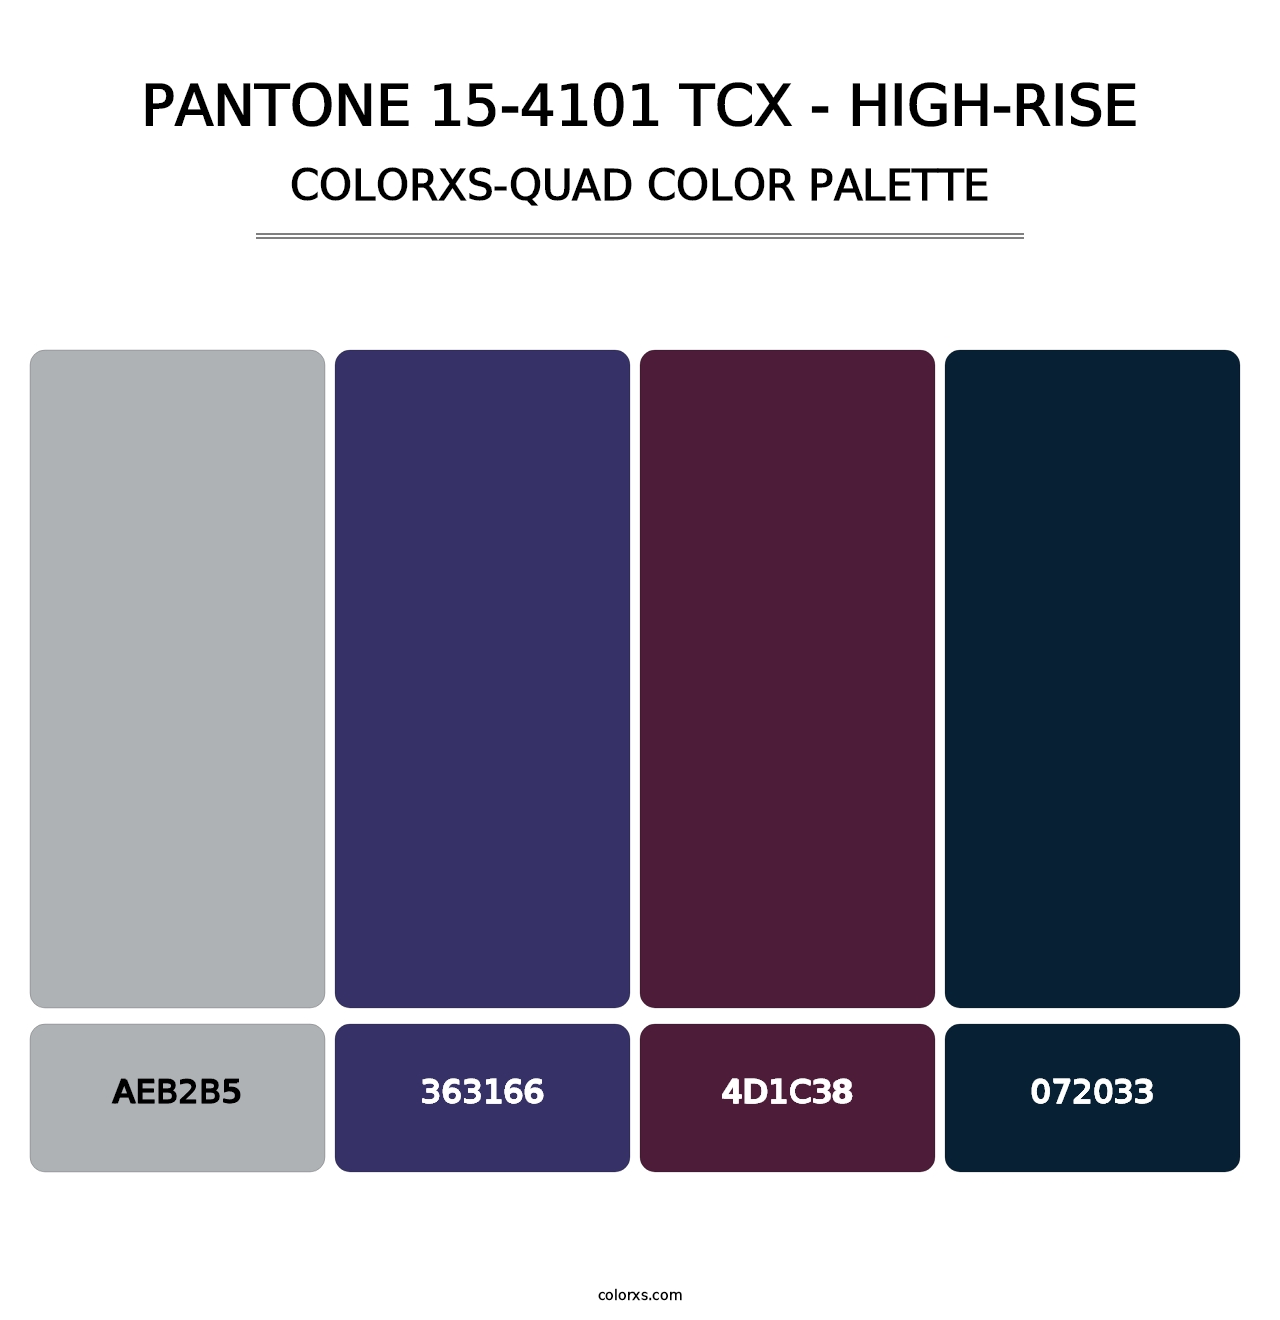 PANTONE 15-4101 TCX - High-rise - Colorxs Quad Palette